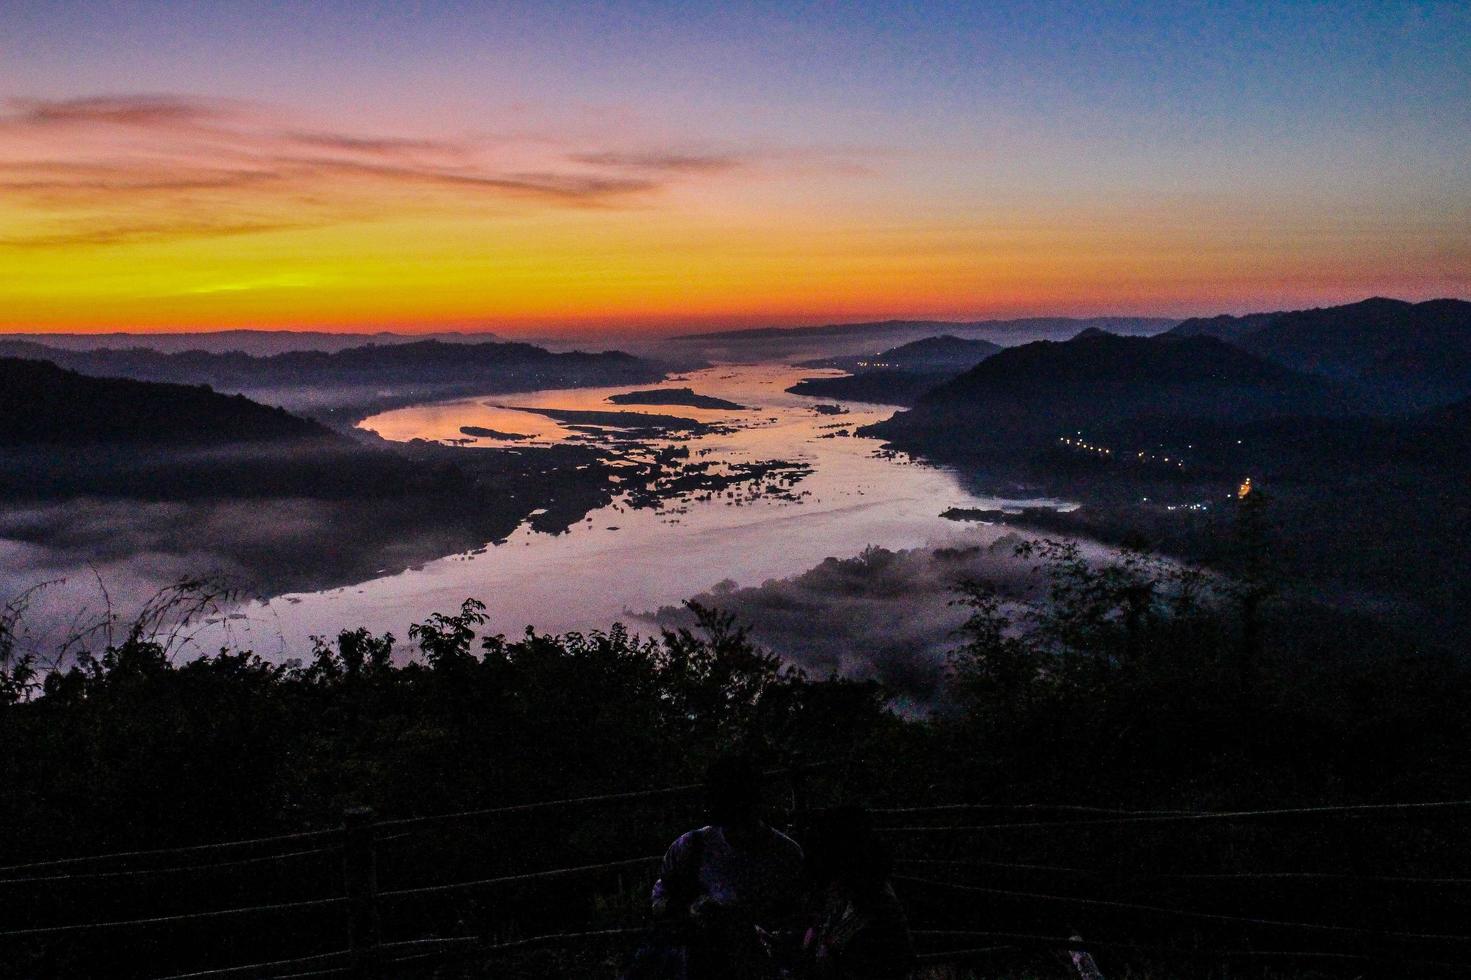 ochtendzonlicht bij de mekong rivier, sangkhom district, thailand foto